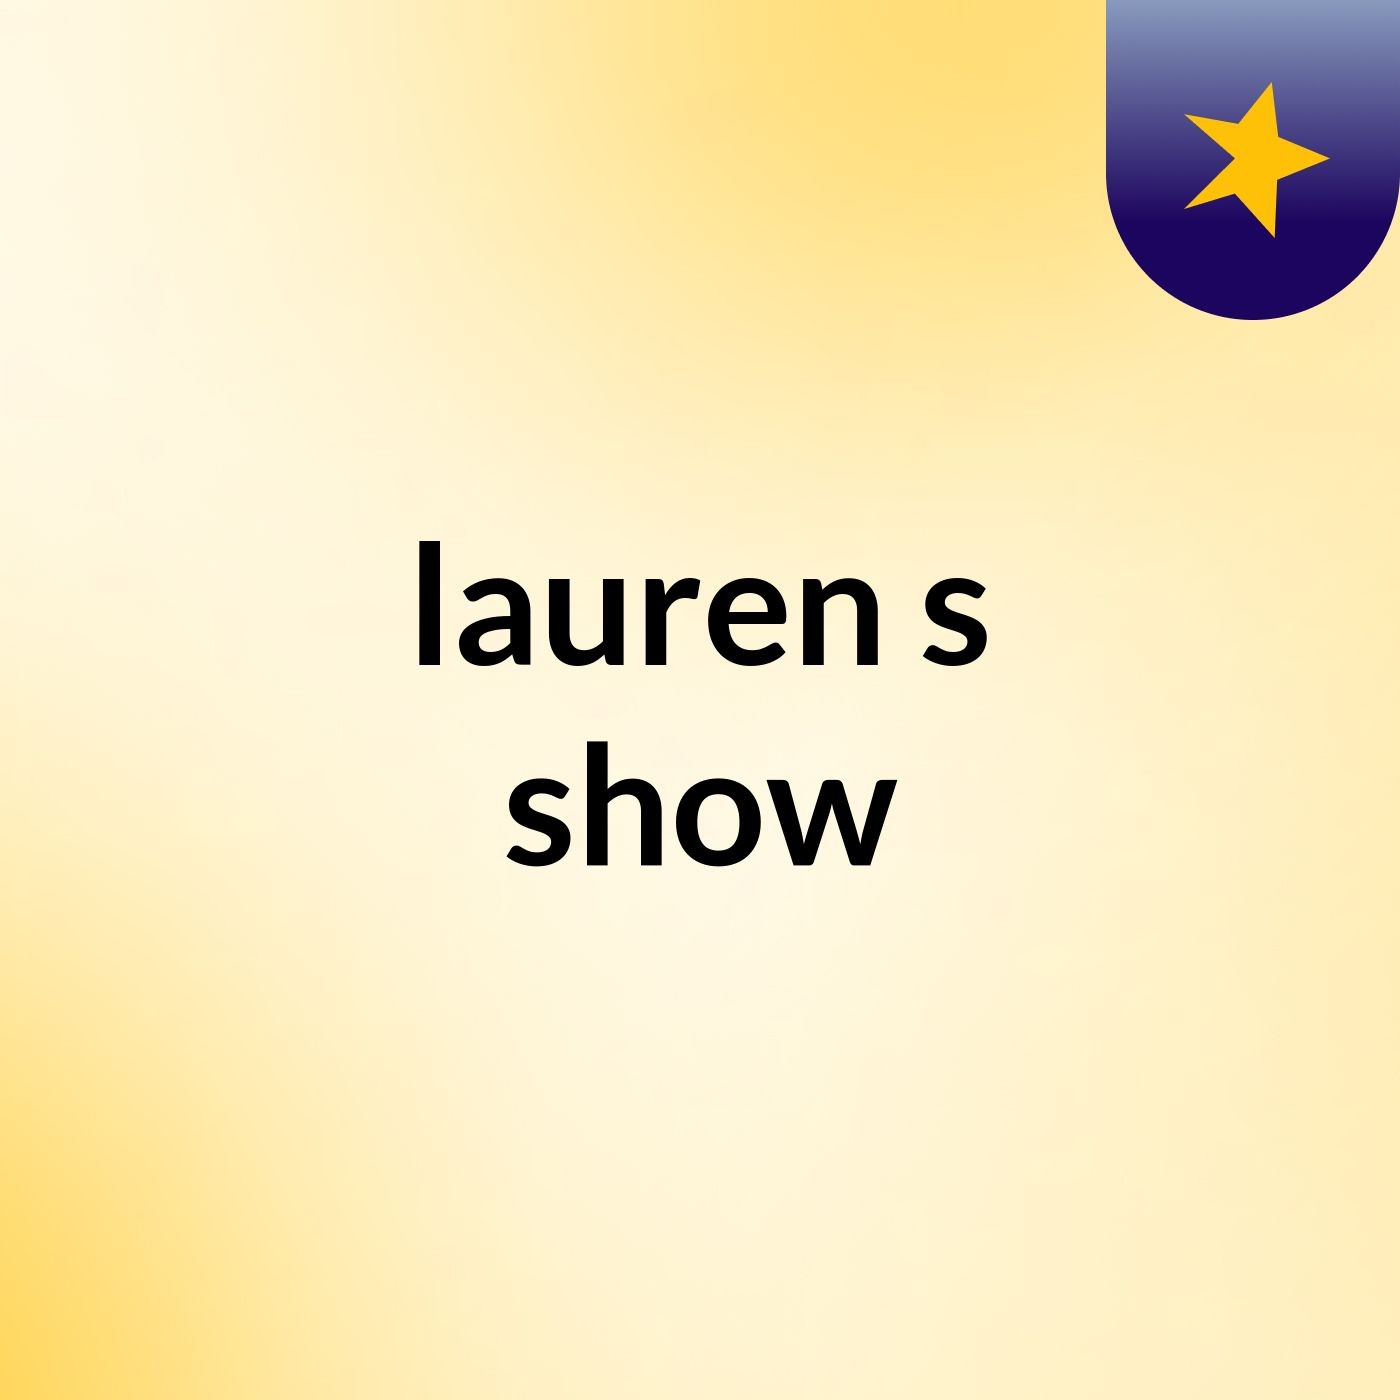 lauren's show